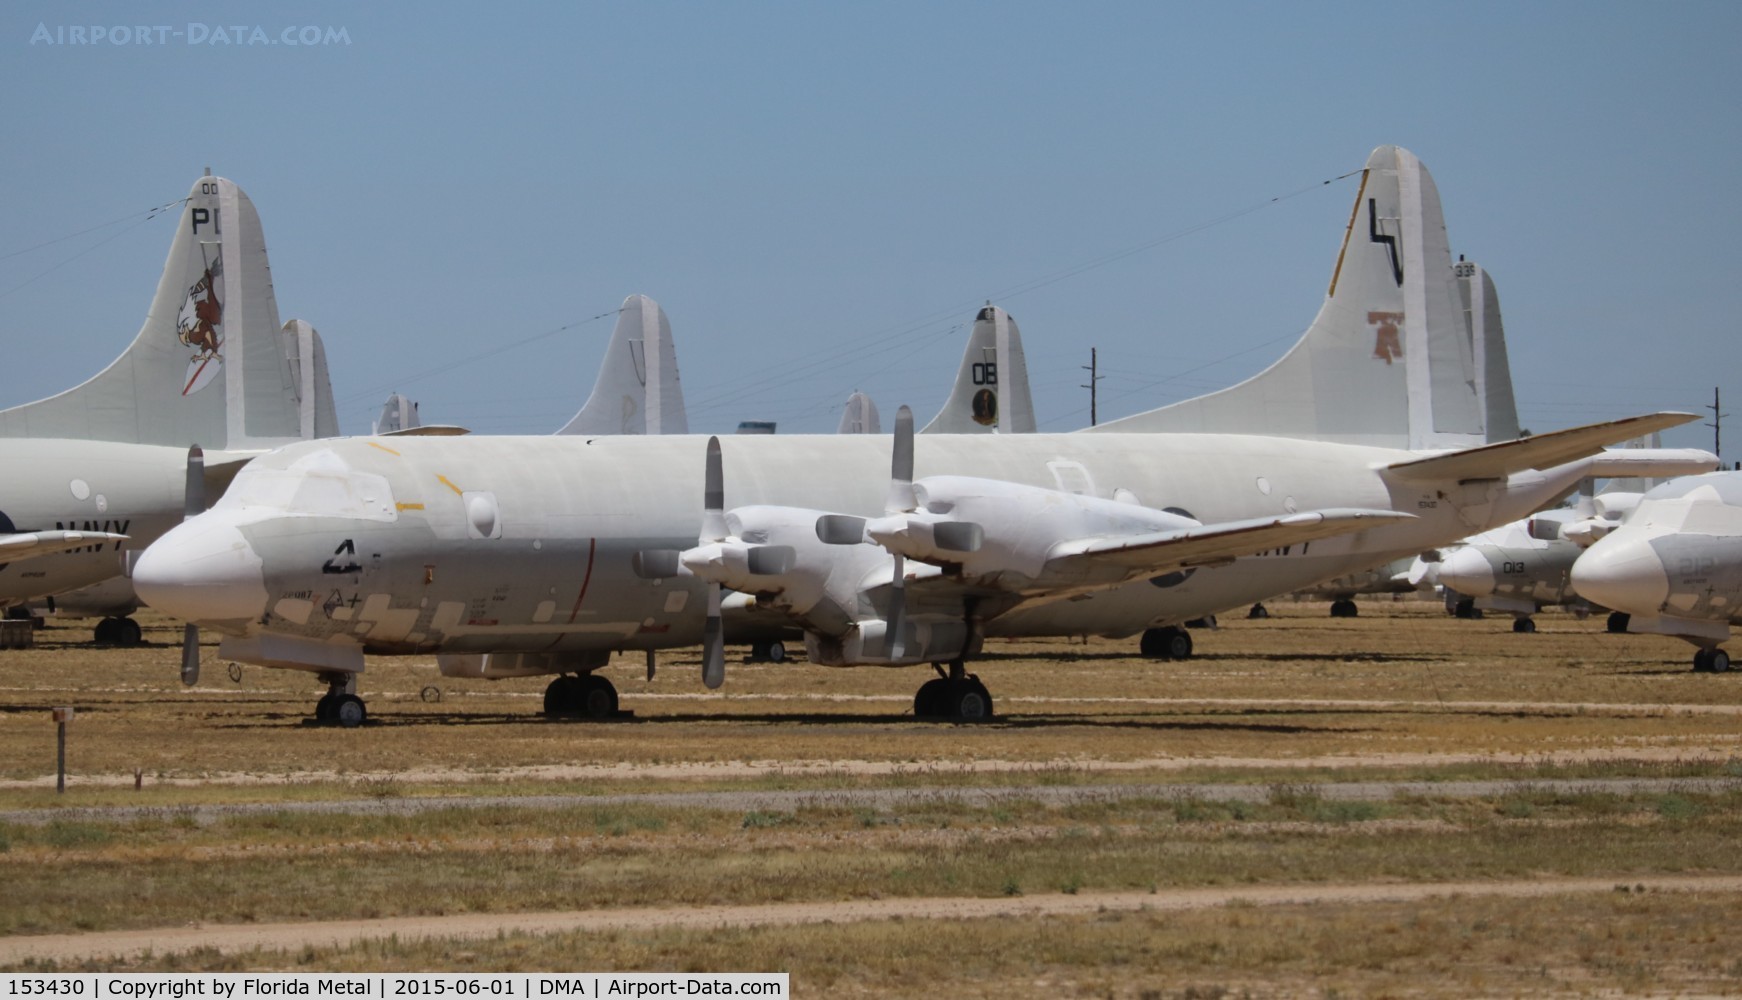 153430, Lockheed P-3B-85-LO Orion C/N 185-5227, P-3B Orion